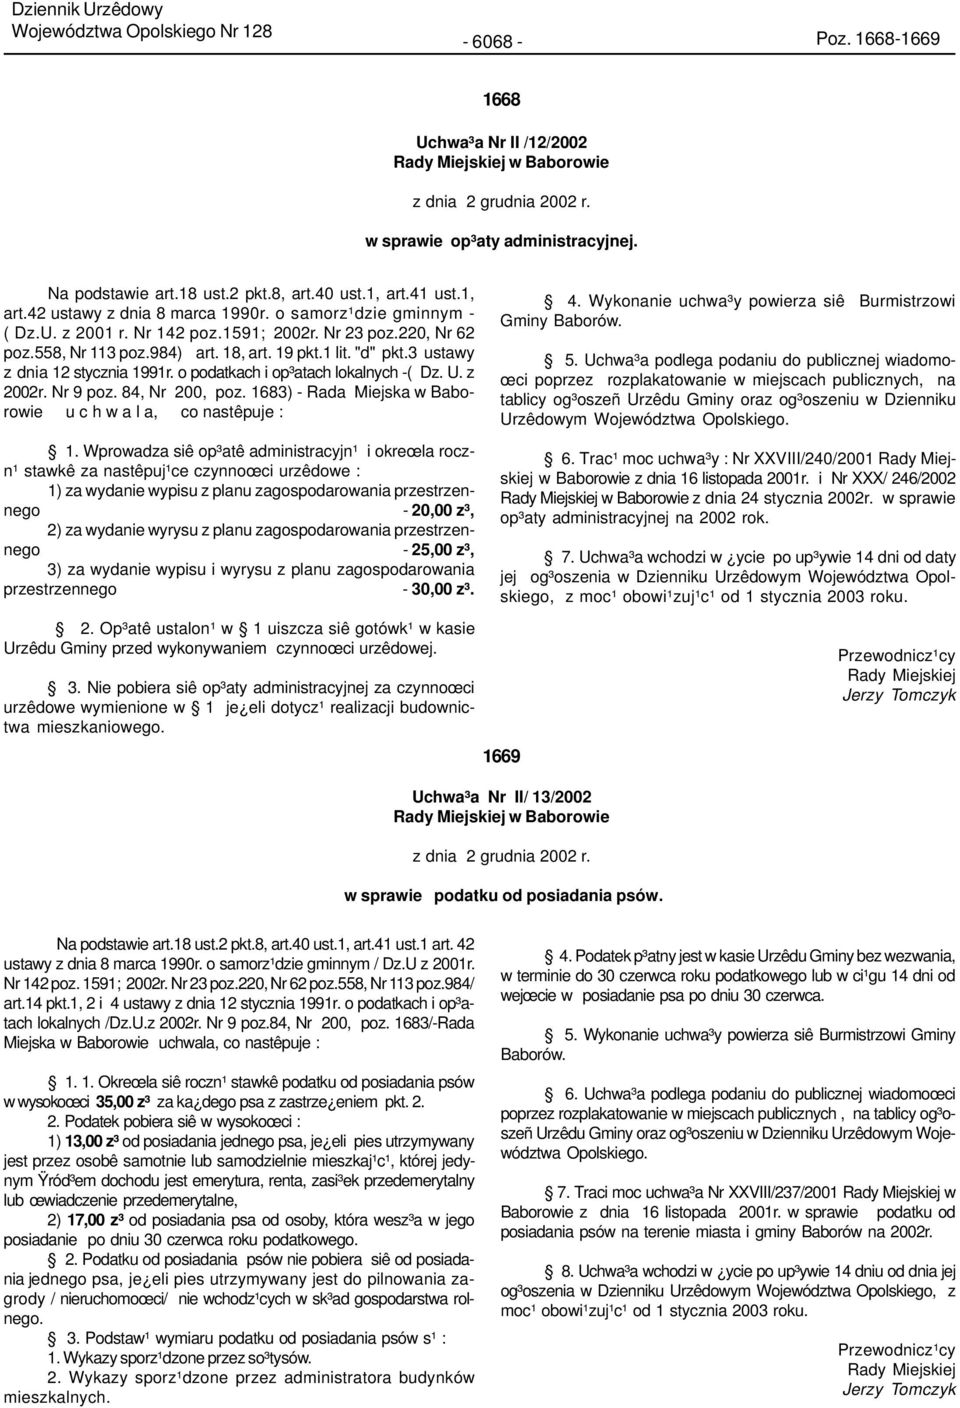 1 lit. "d" pkt.3 ustawy z dnia 12 stycznia 1991r. o podatkach i op³atach lokalnych -( Dz. U. z 2002r. Nr 9 poz. 84, Nr 200, poz. 1683) - Rada Miejska w Baborowie u c h w a l a, co nastêpuje : 1.